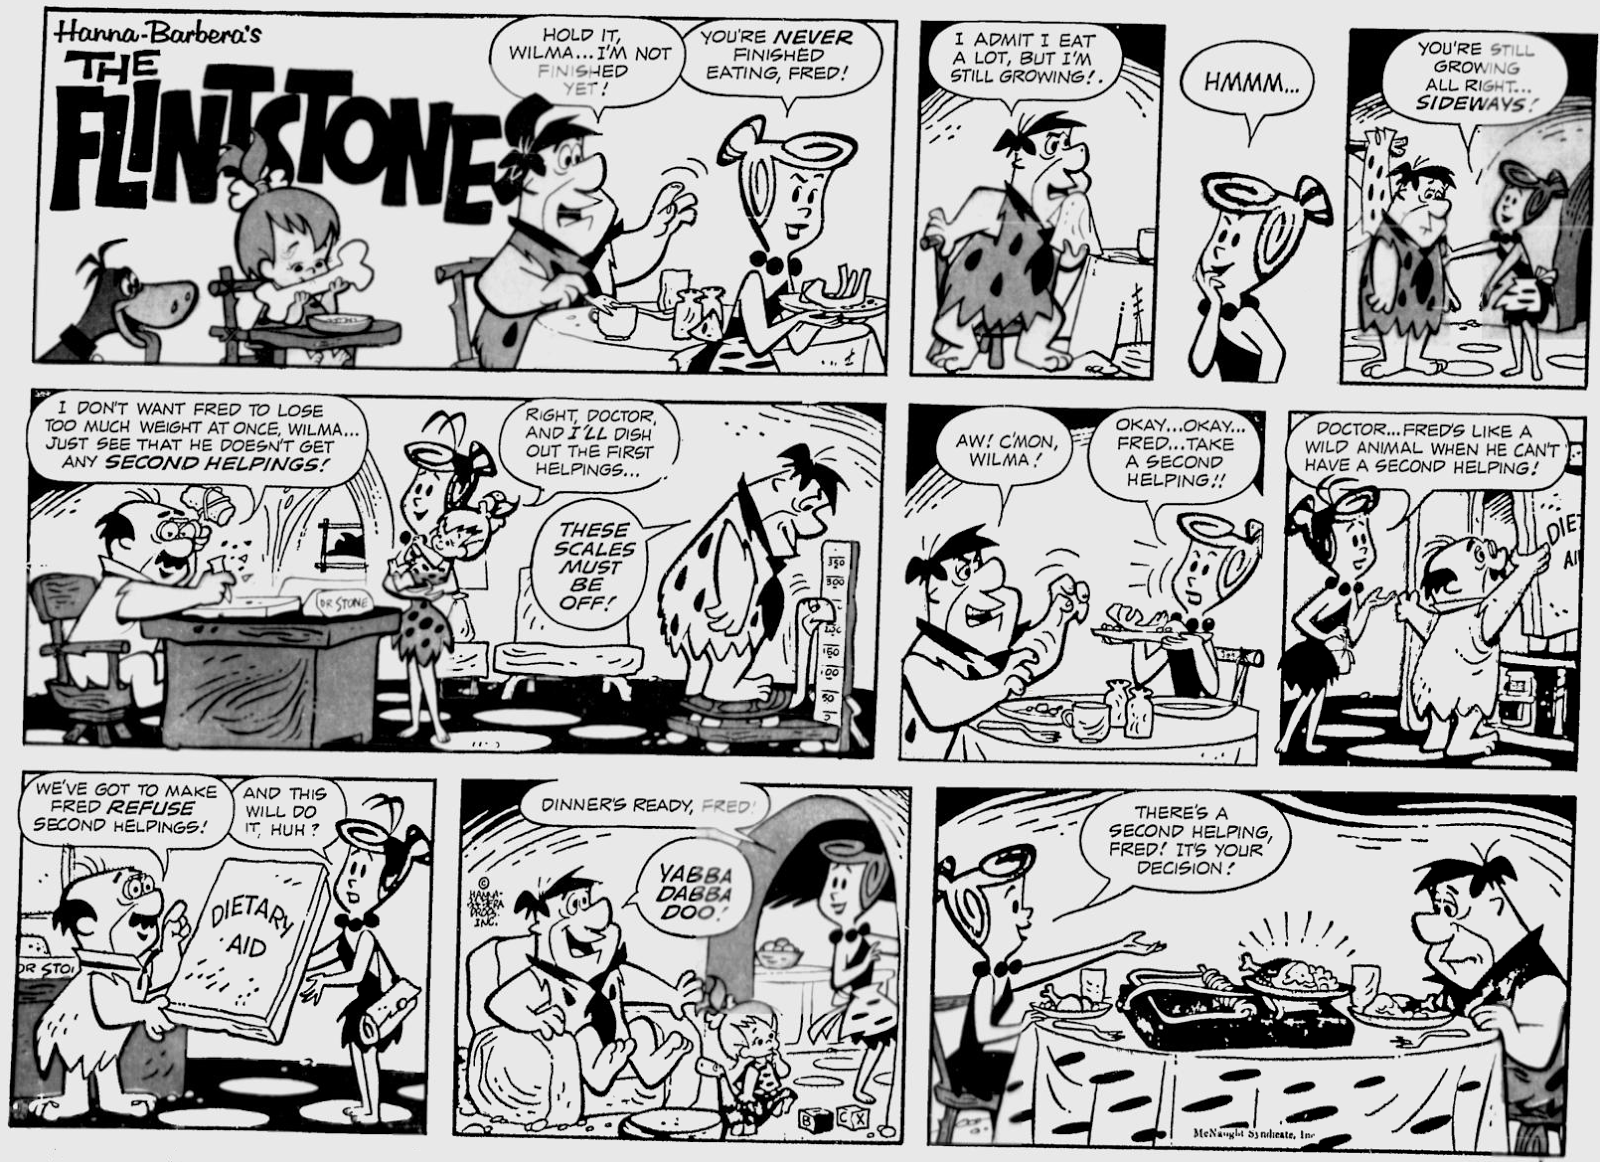 Yowp: Flintstones Weekend Comics, November 1963